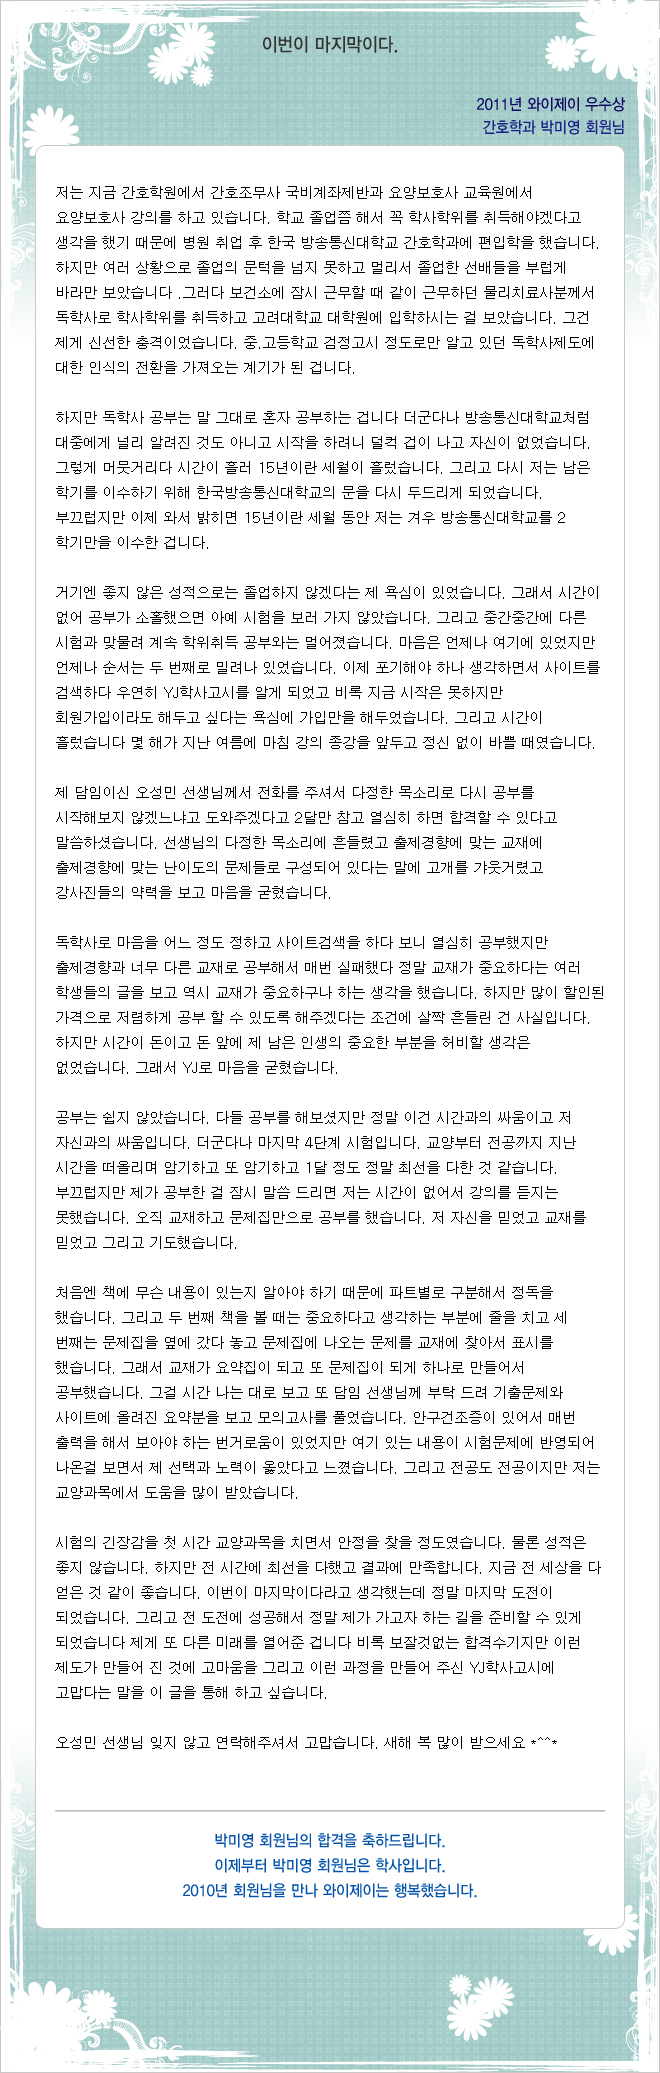 박미영 회원님의 합격수기